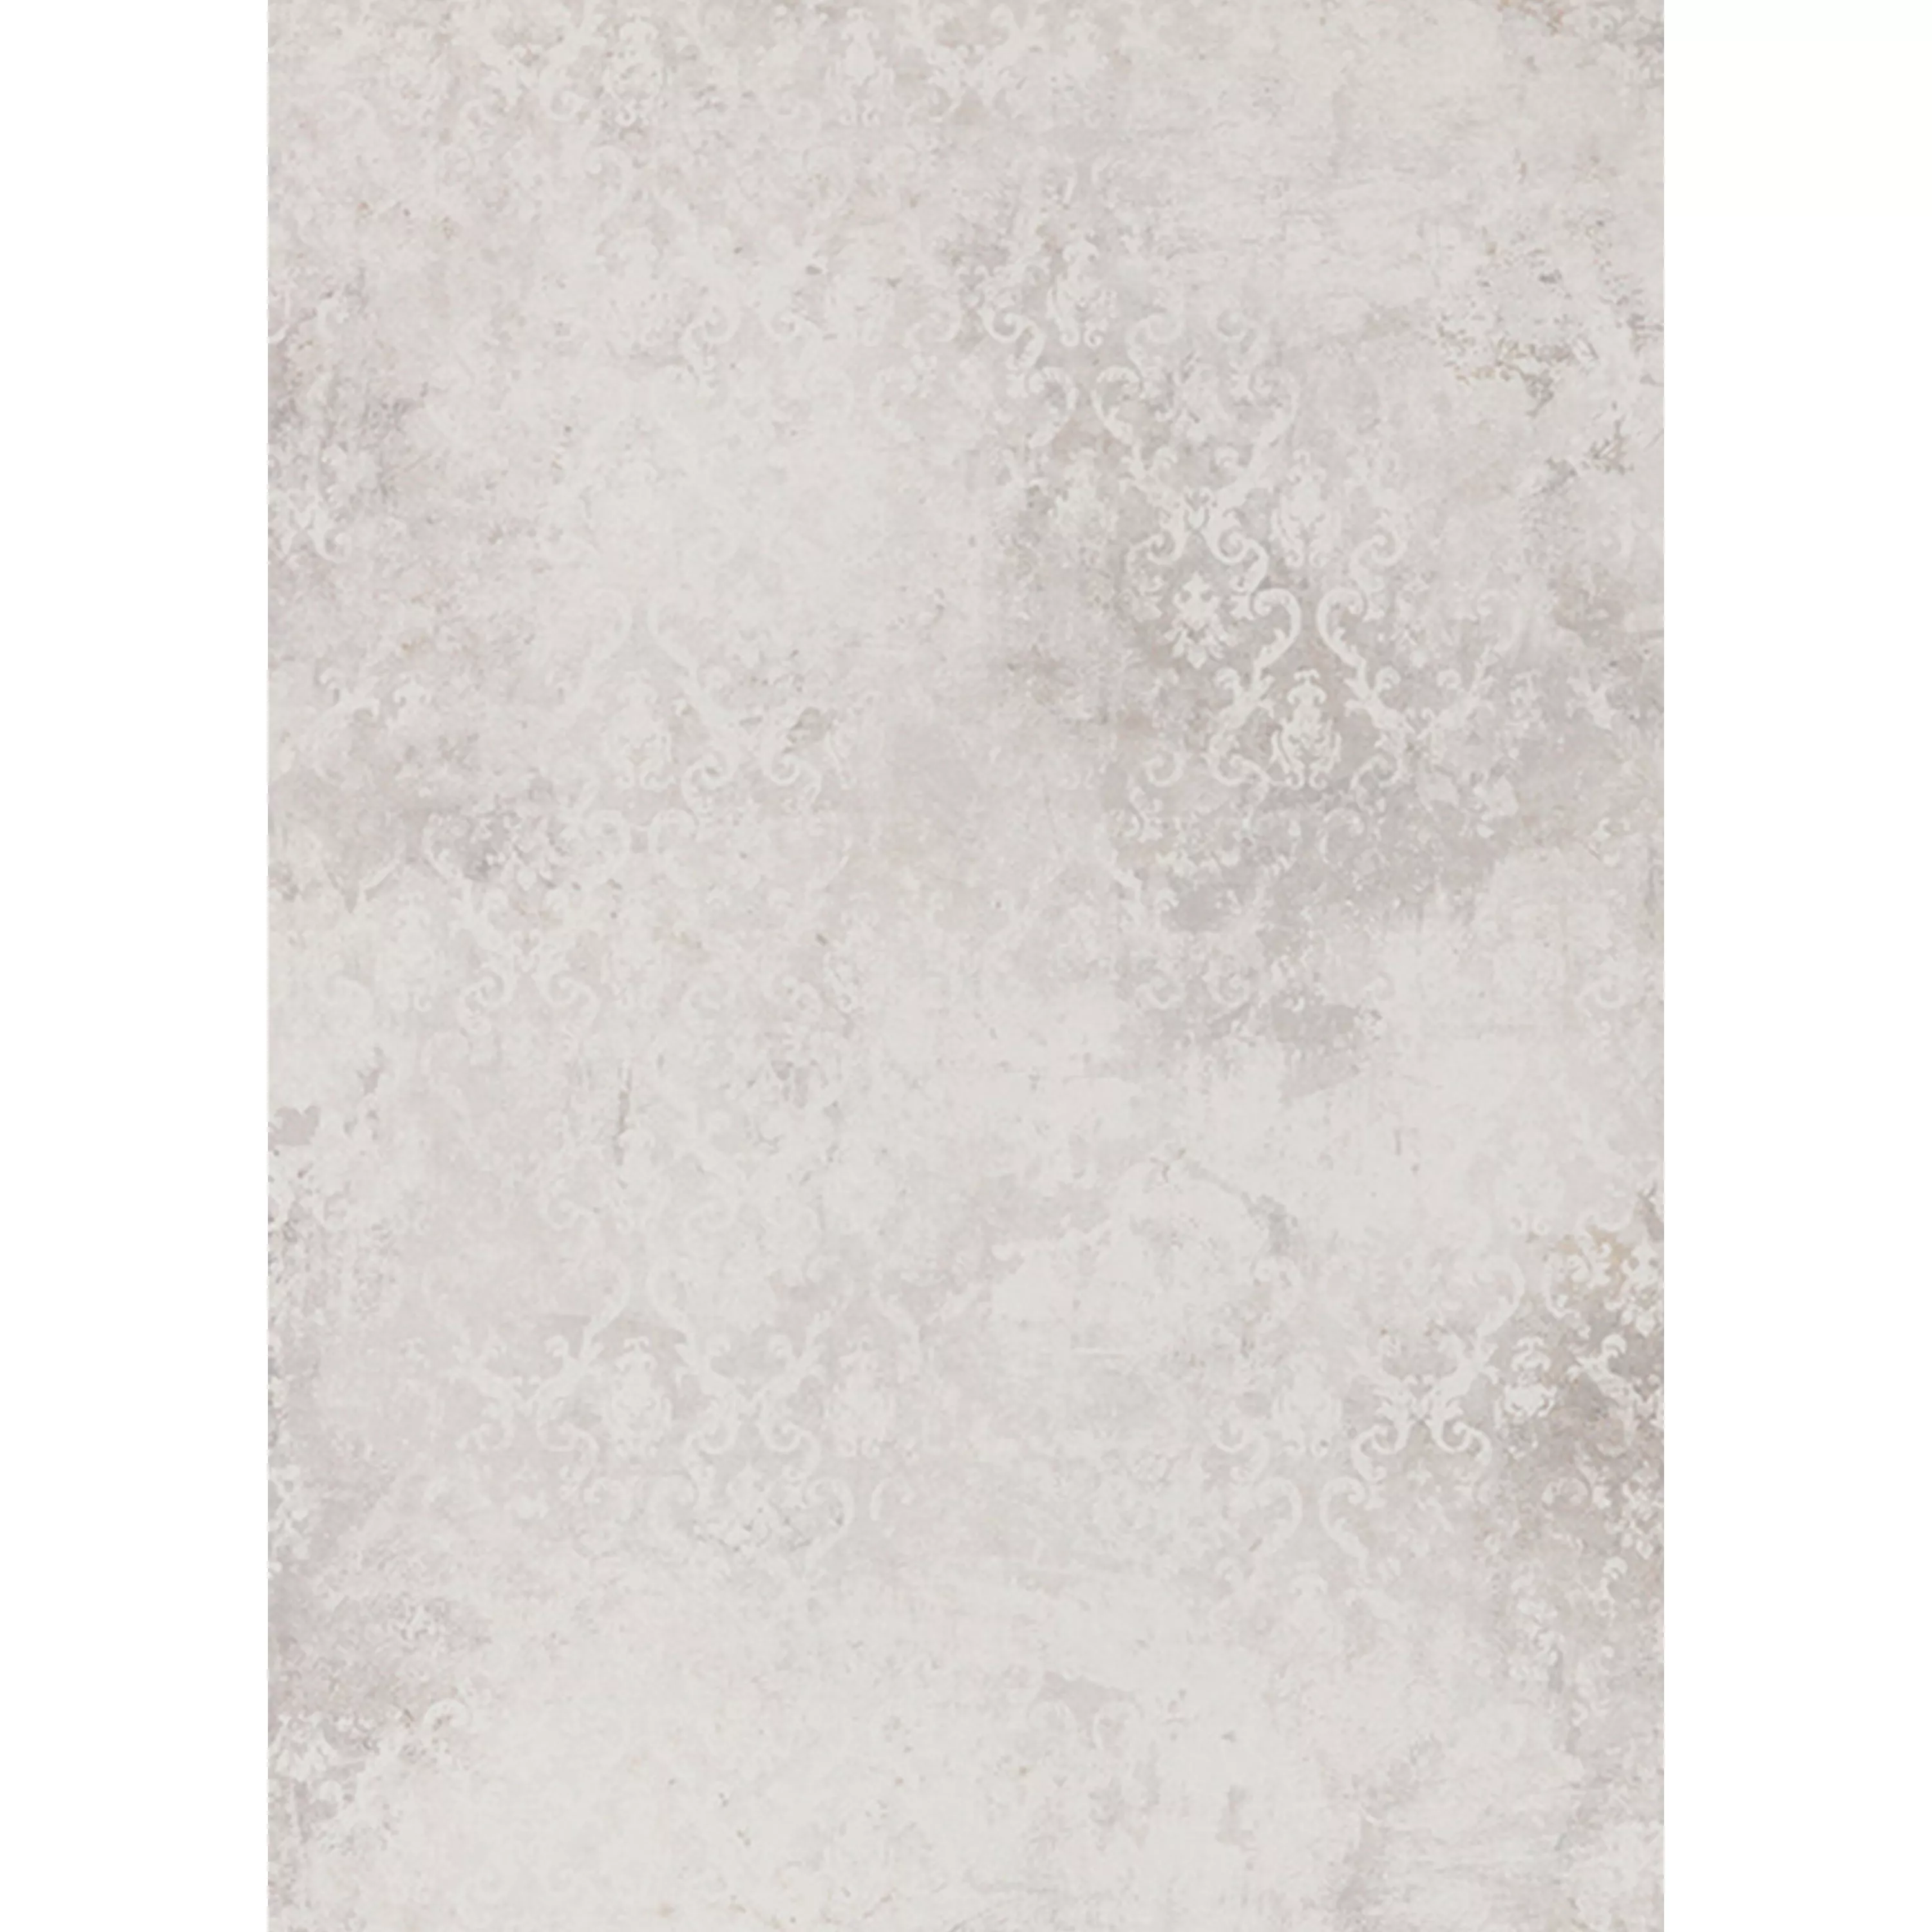 Podlahové Dlaždice Poetic Kámen Vzhled R10/A Bílá Decor 60x120cm